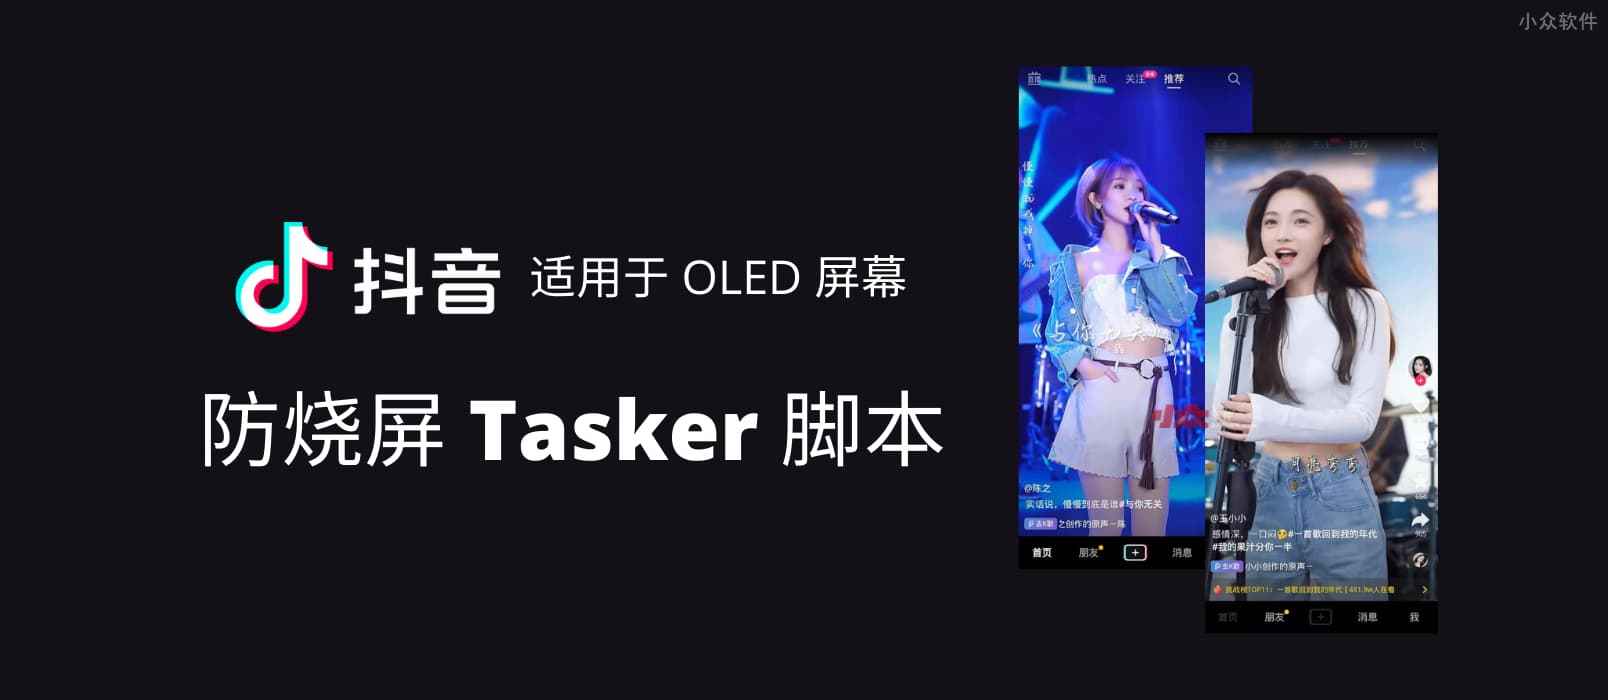 抖音防烧屏脚本 - Tasker 脚本分享，适用于 OLED 屏幕